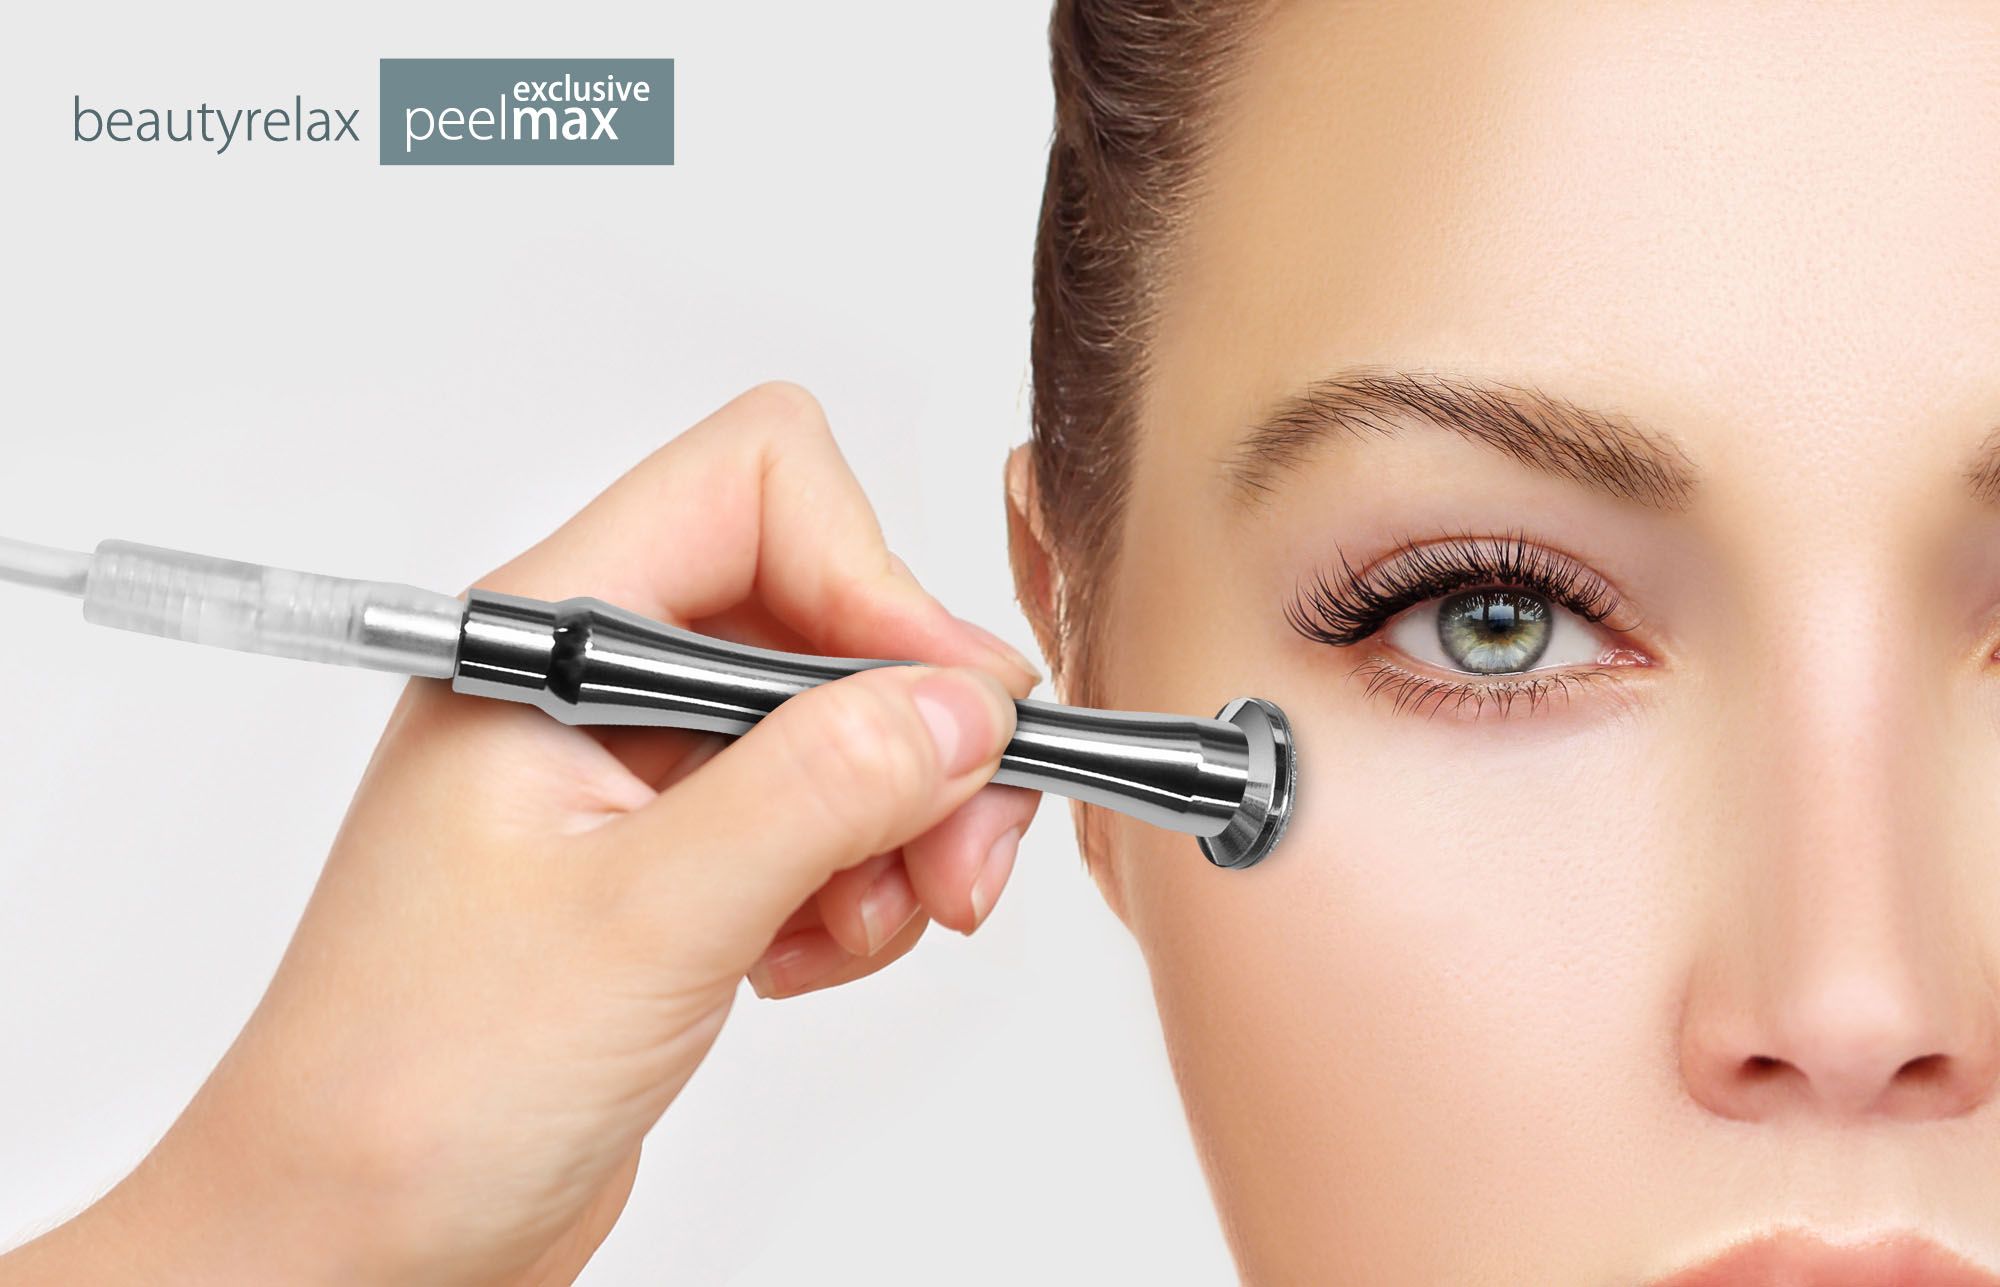 Profesionální přístroj na abrazi pleti BeautyRelax Peelmax Exclusive